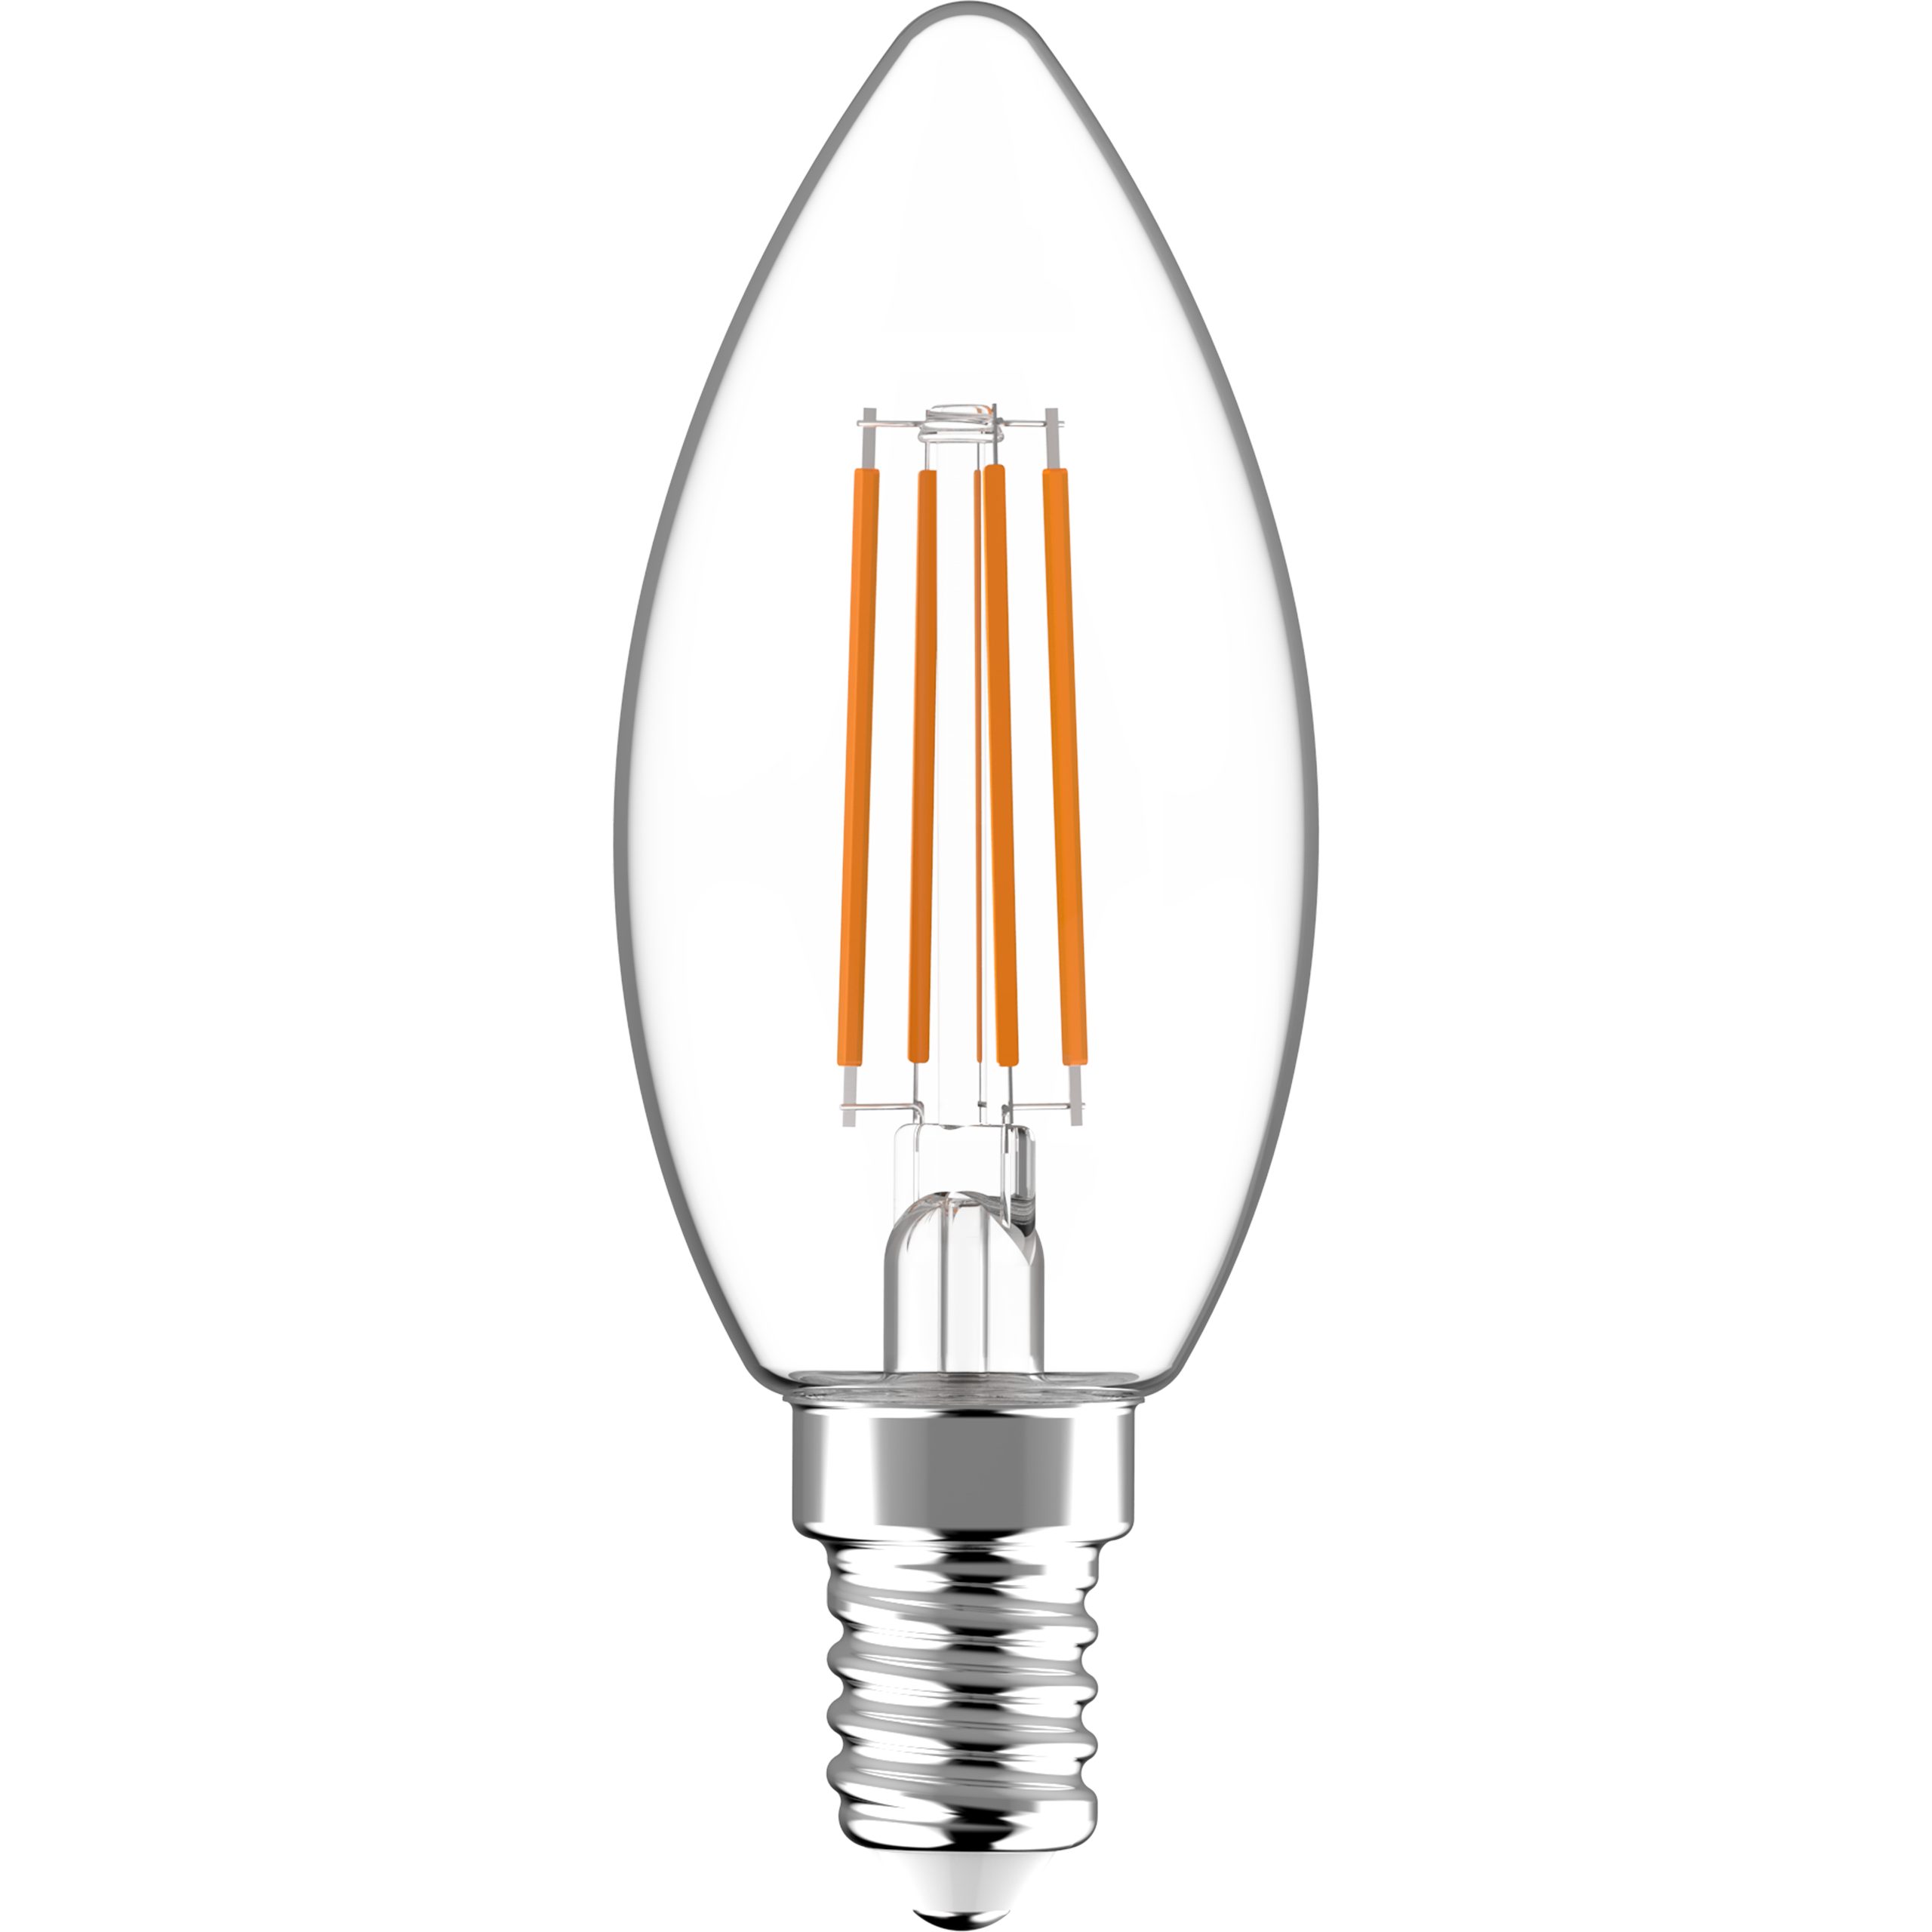 LED's light LED-Leuchtmittel 4.5W warmweiß C35 LED E14 Kerze, Klar dimmbar 0620154 E14